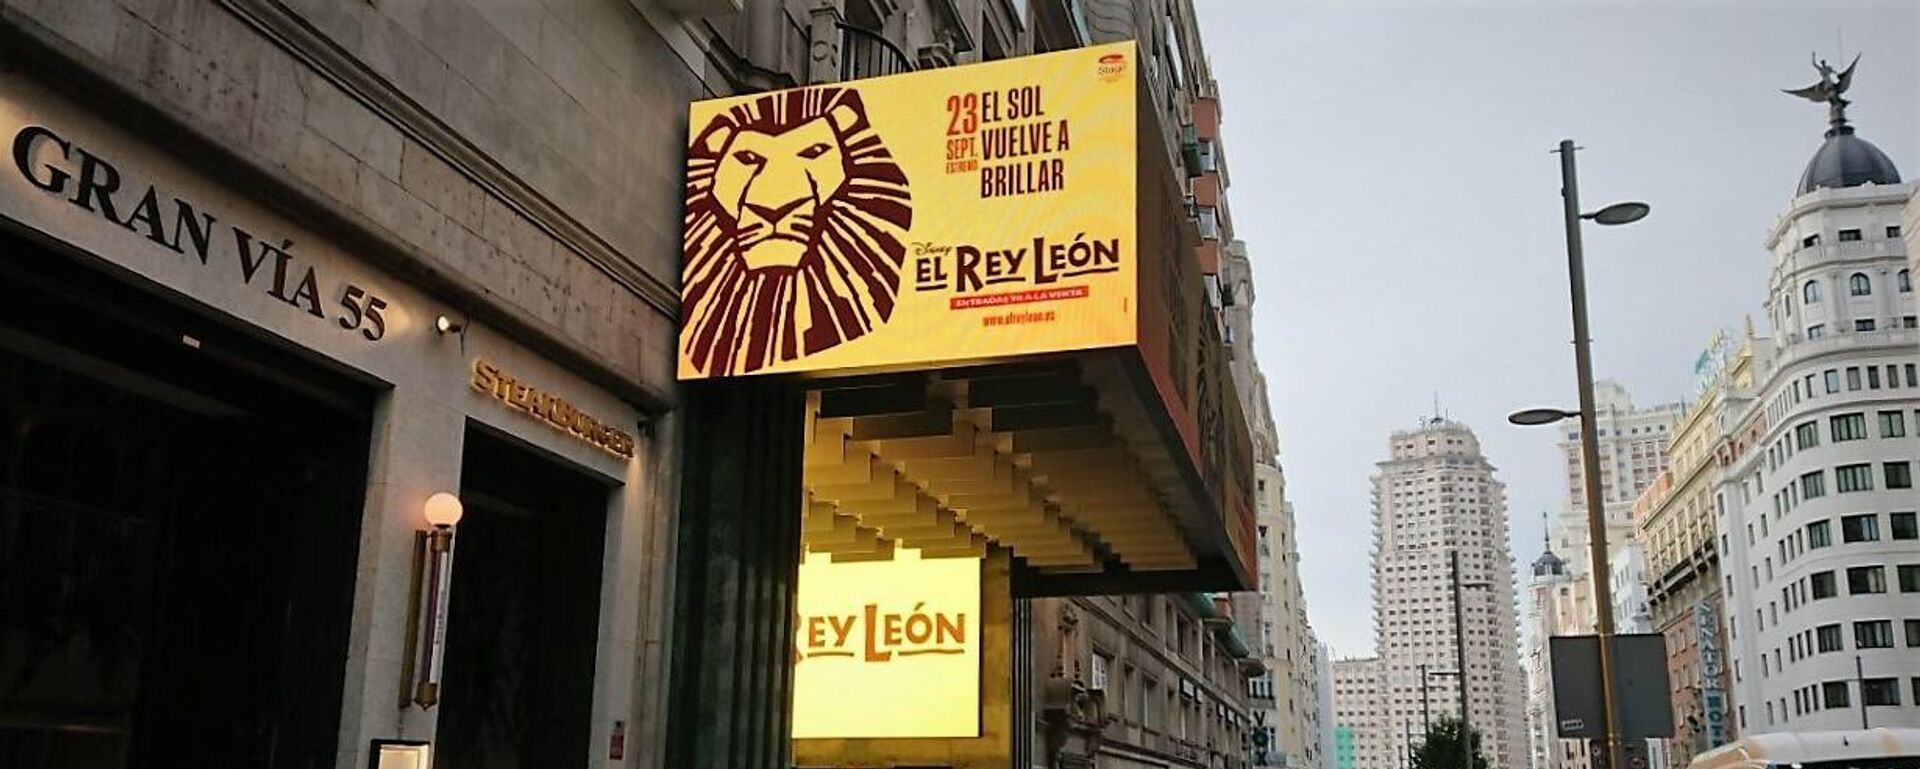 Cartel del musical 'El Rey León' en la Gran Vía de Madrid - Sputnik Mundo, 1920, 14.09.2021